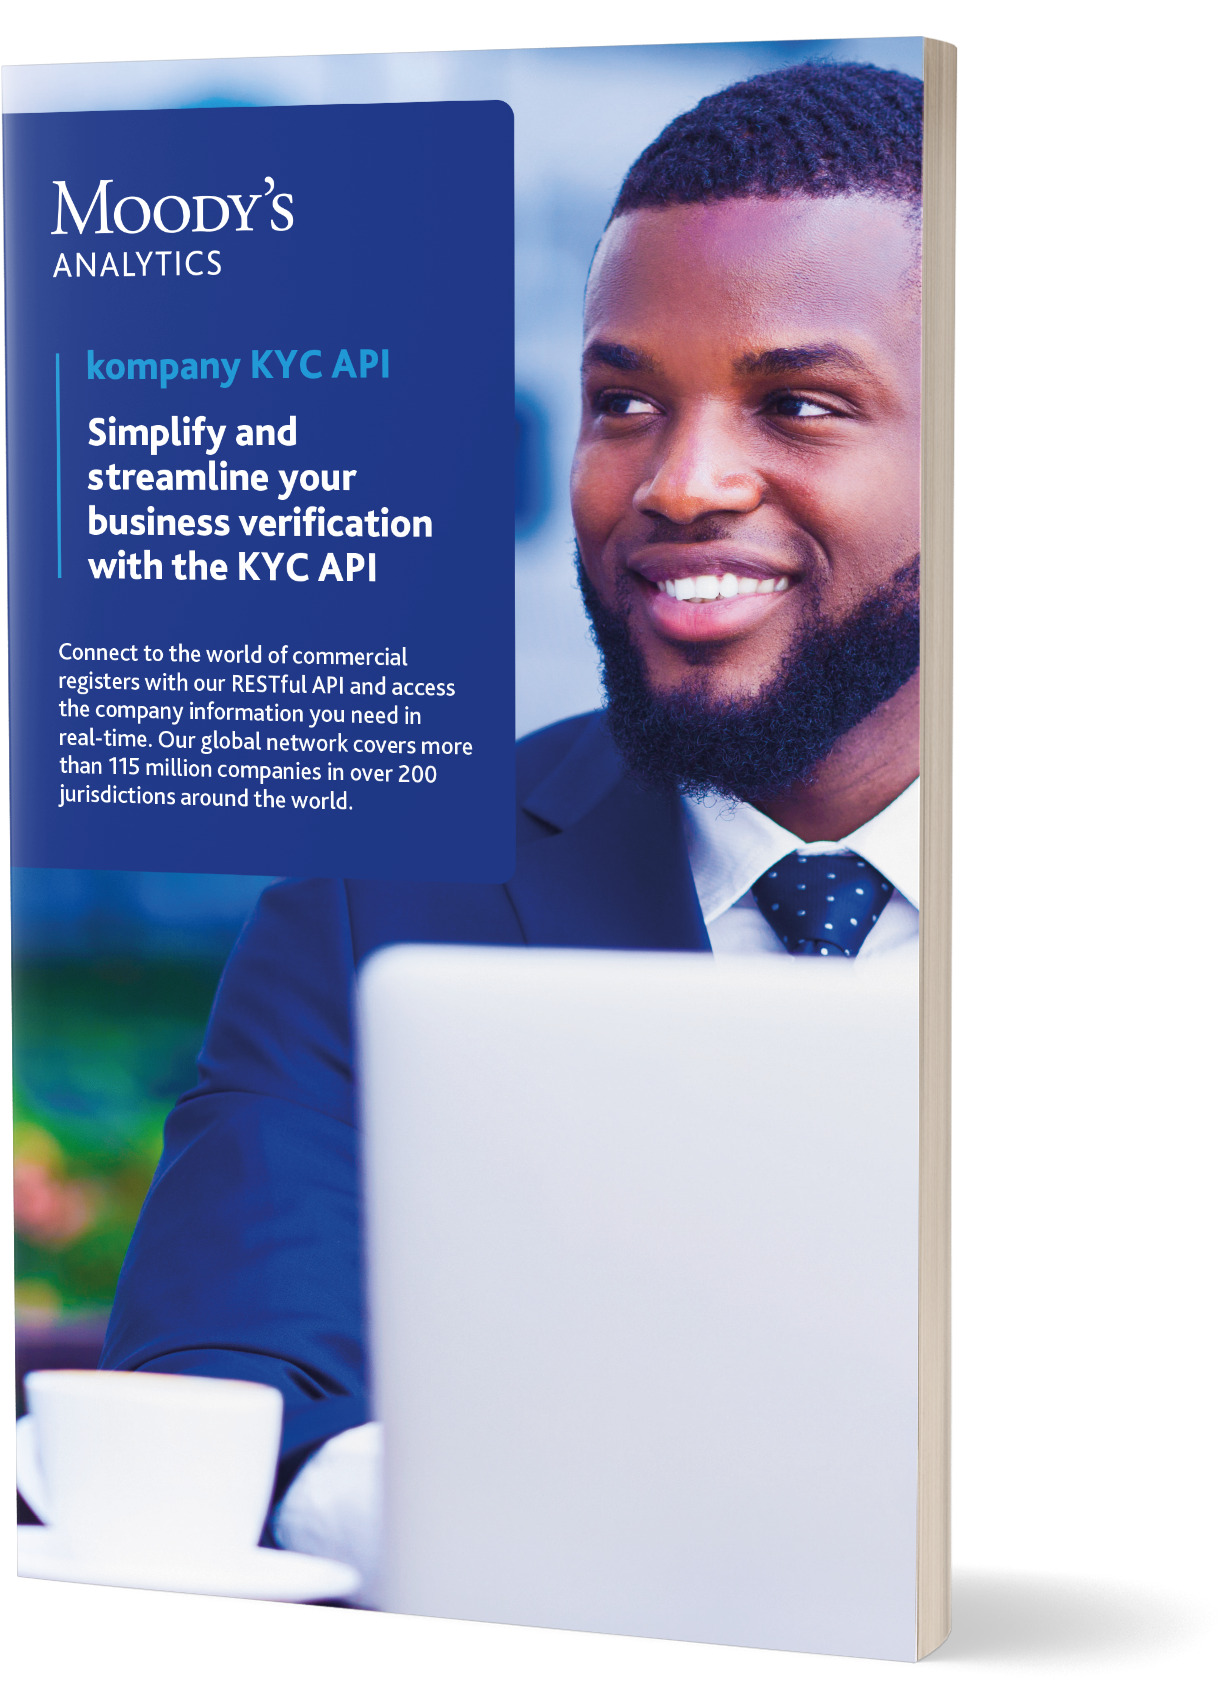 kompany KYC API brochure